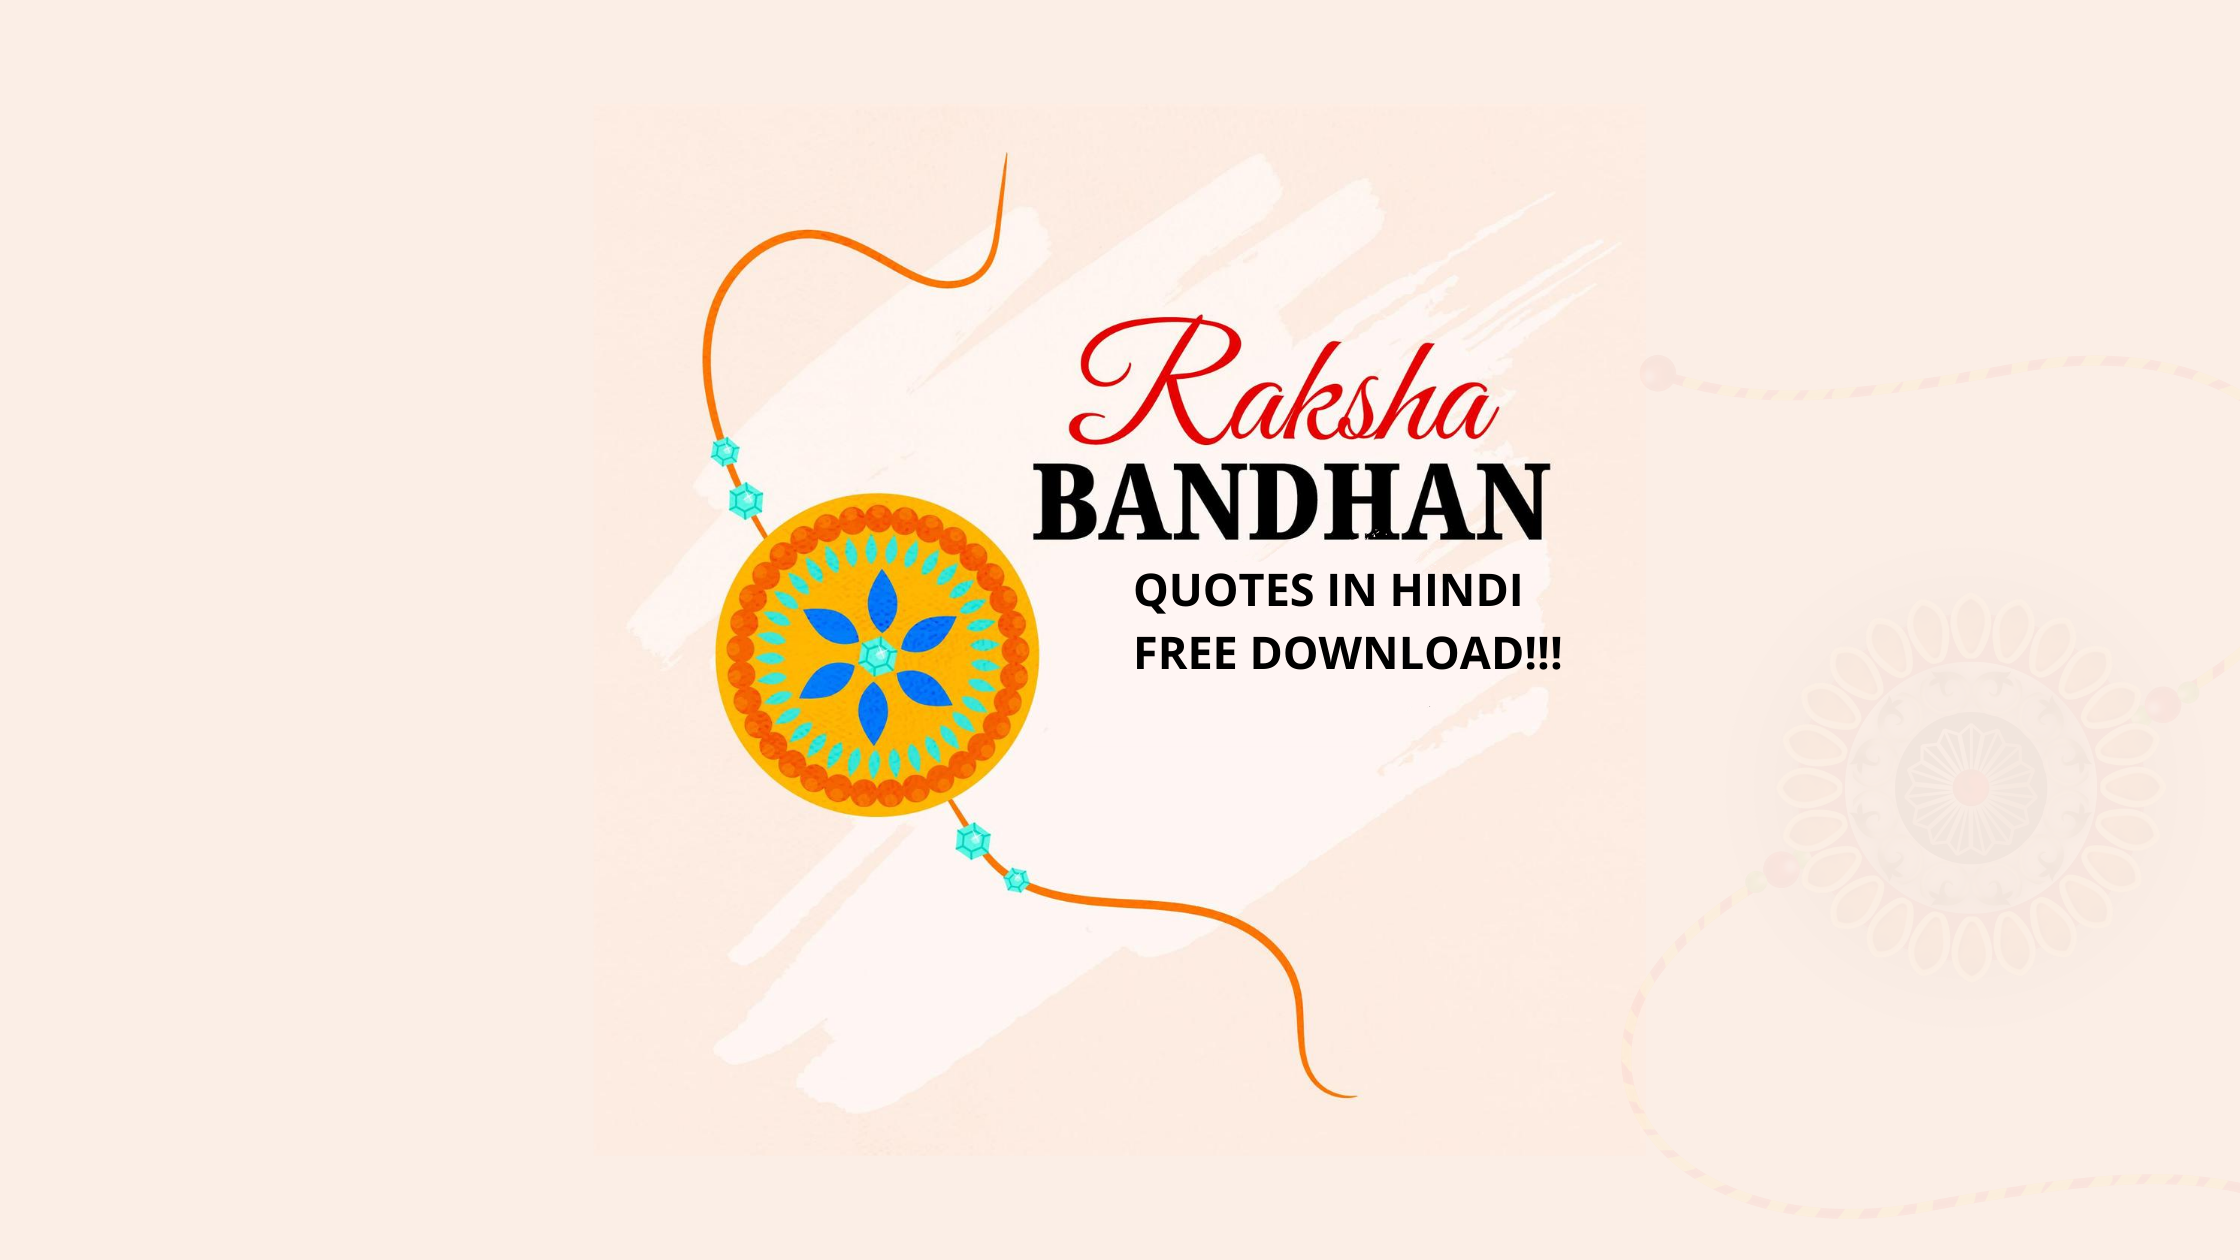 Rakshaa Bandhan quotes in hindi